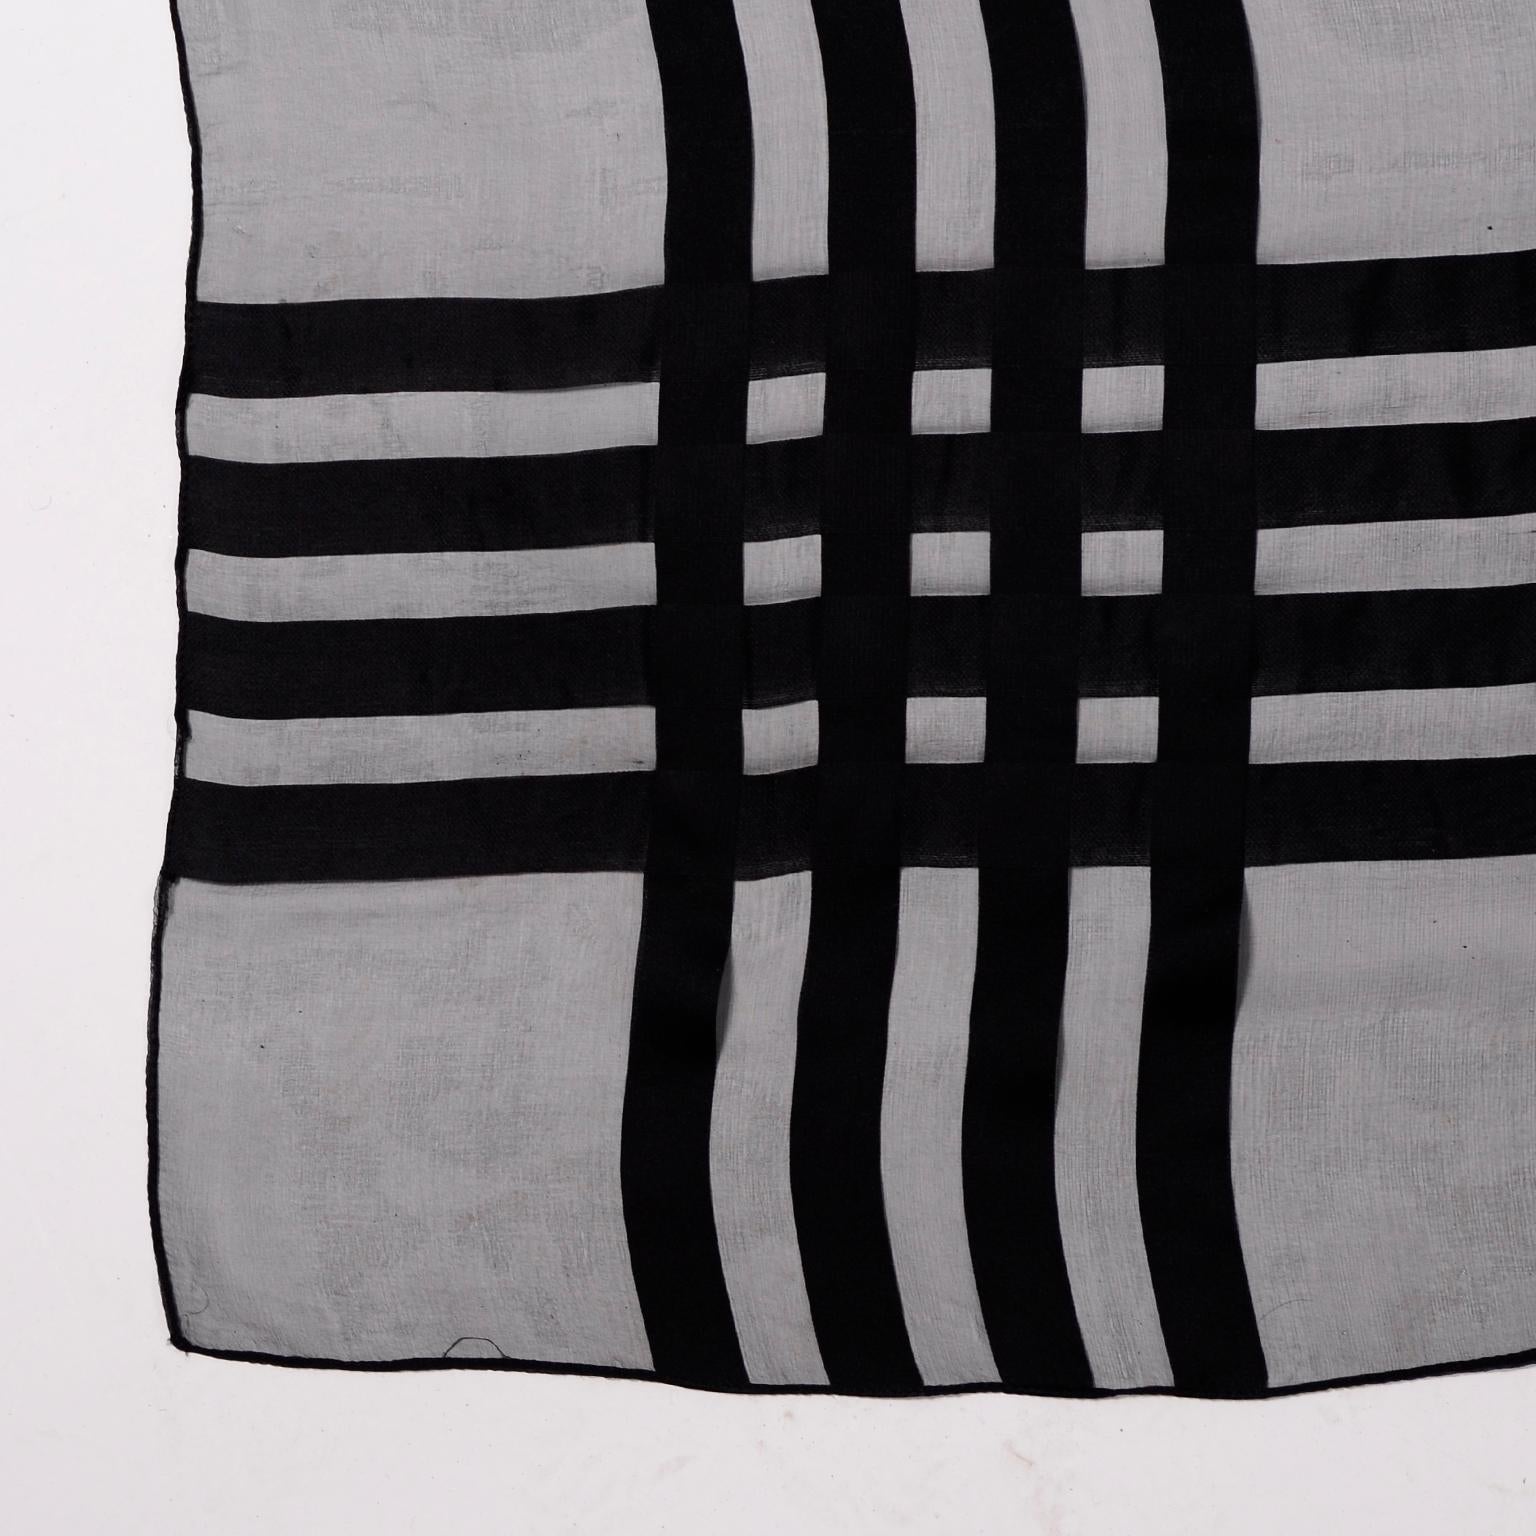 Yves Saint Laurent Foulards Silk Oversized Large Black Sheer Scarf or Shawl Wrap 1